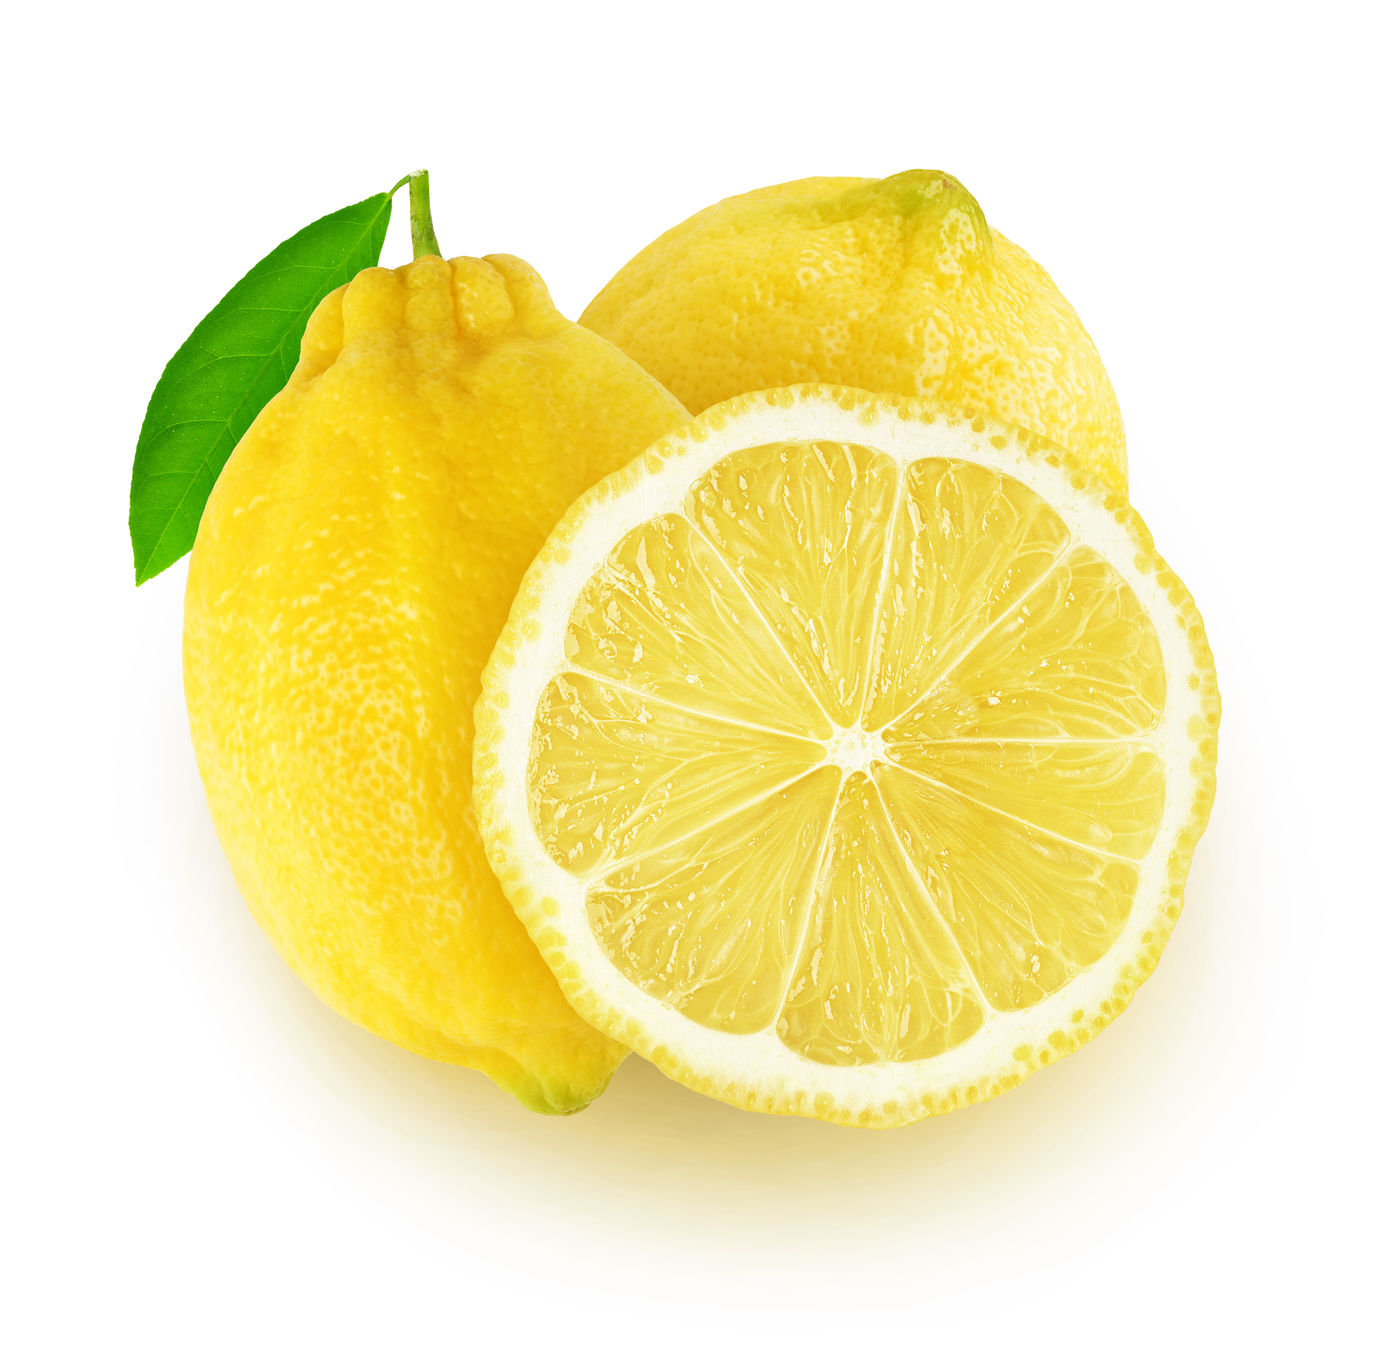 Lemon.  https://www.wocdetox.com/mistakes-people-make.html